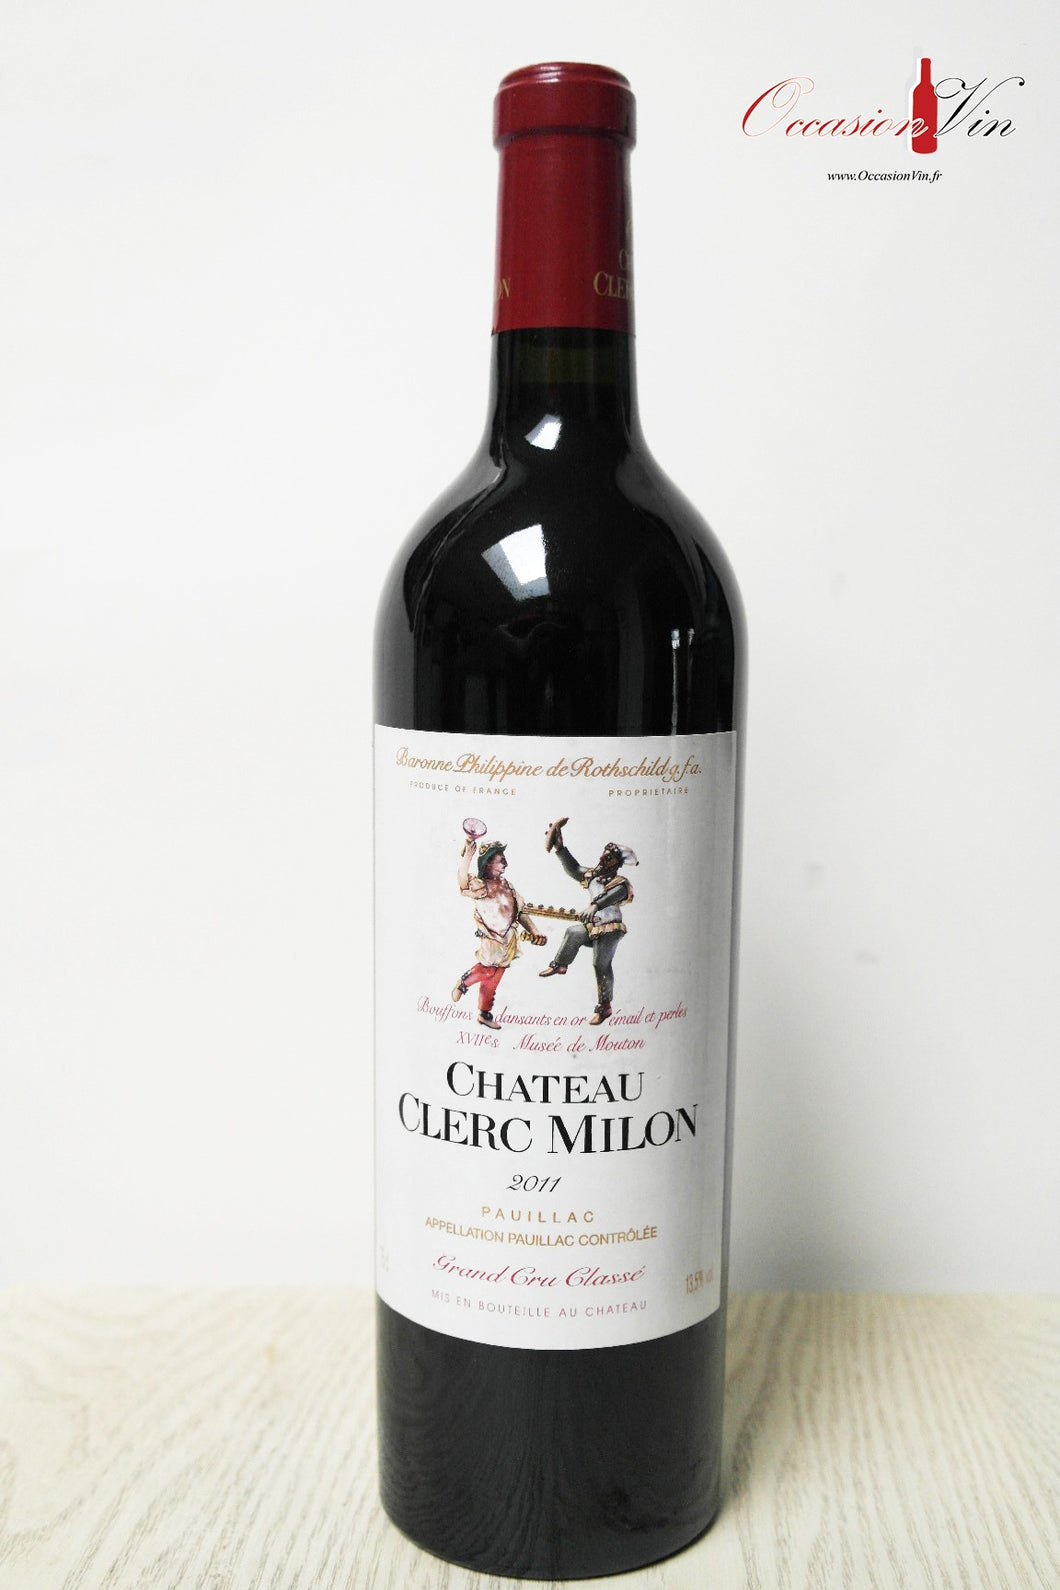 Château Clerc Milon Vin 2011